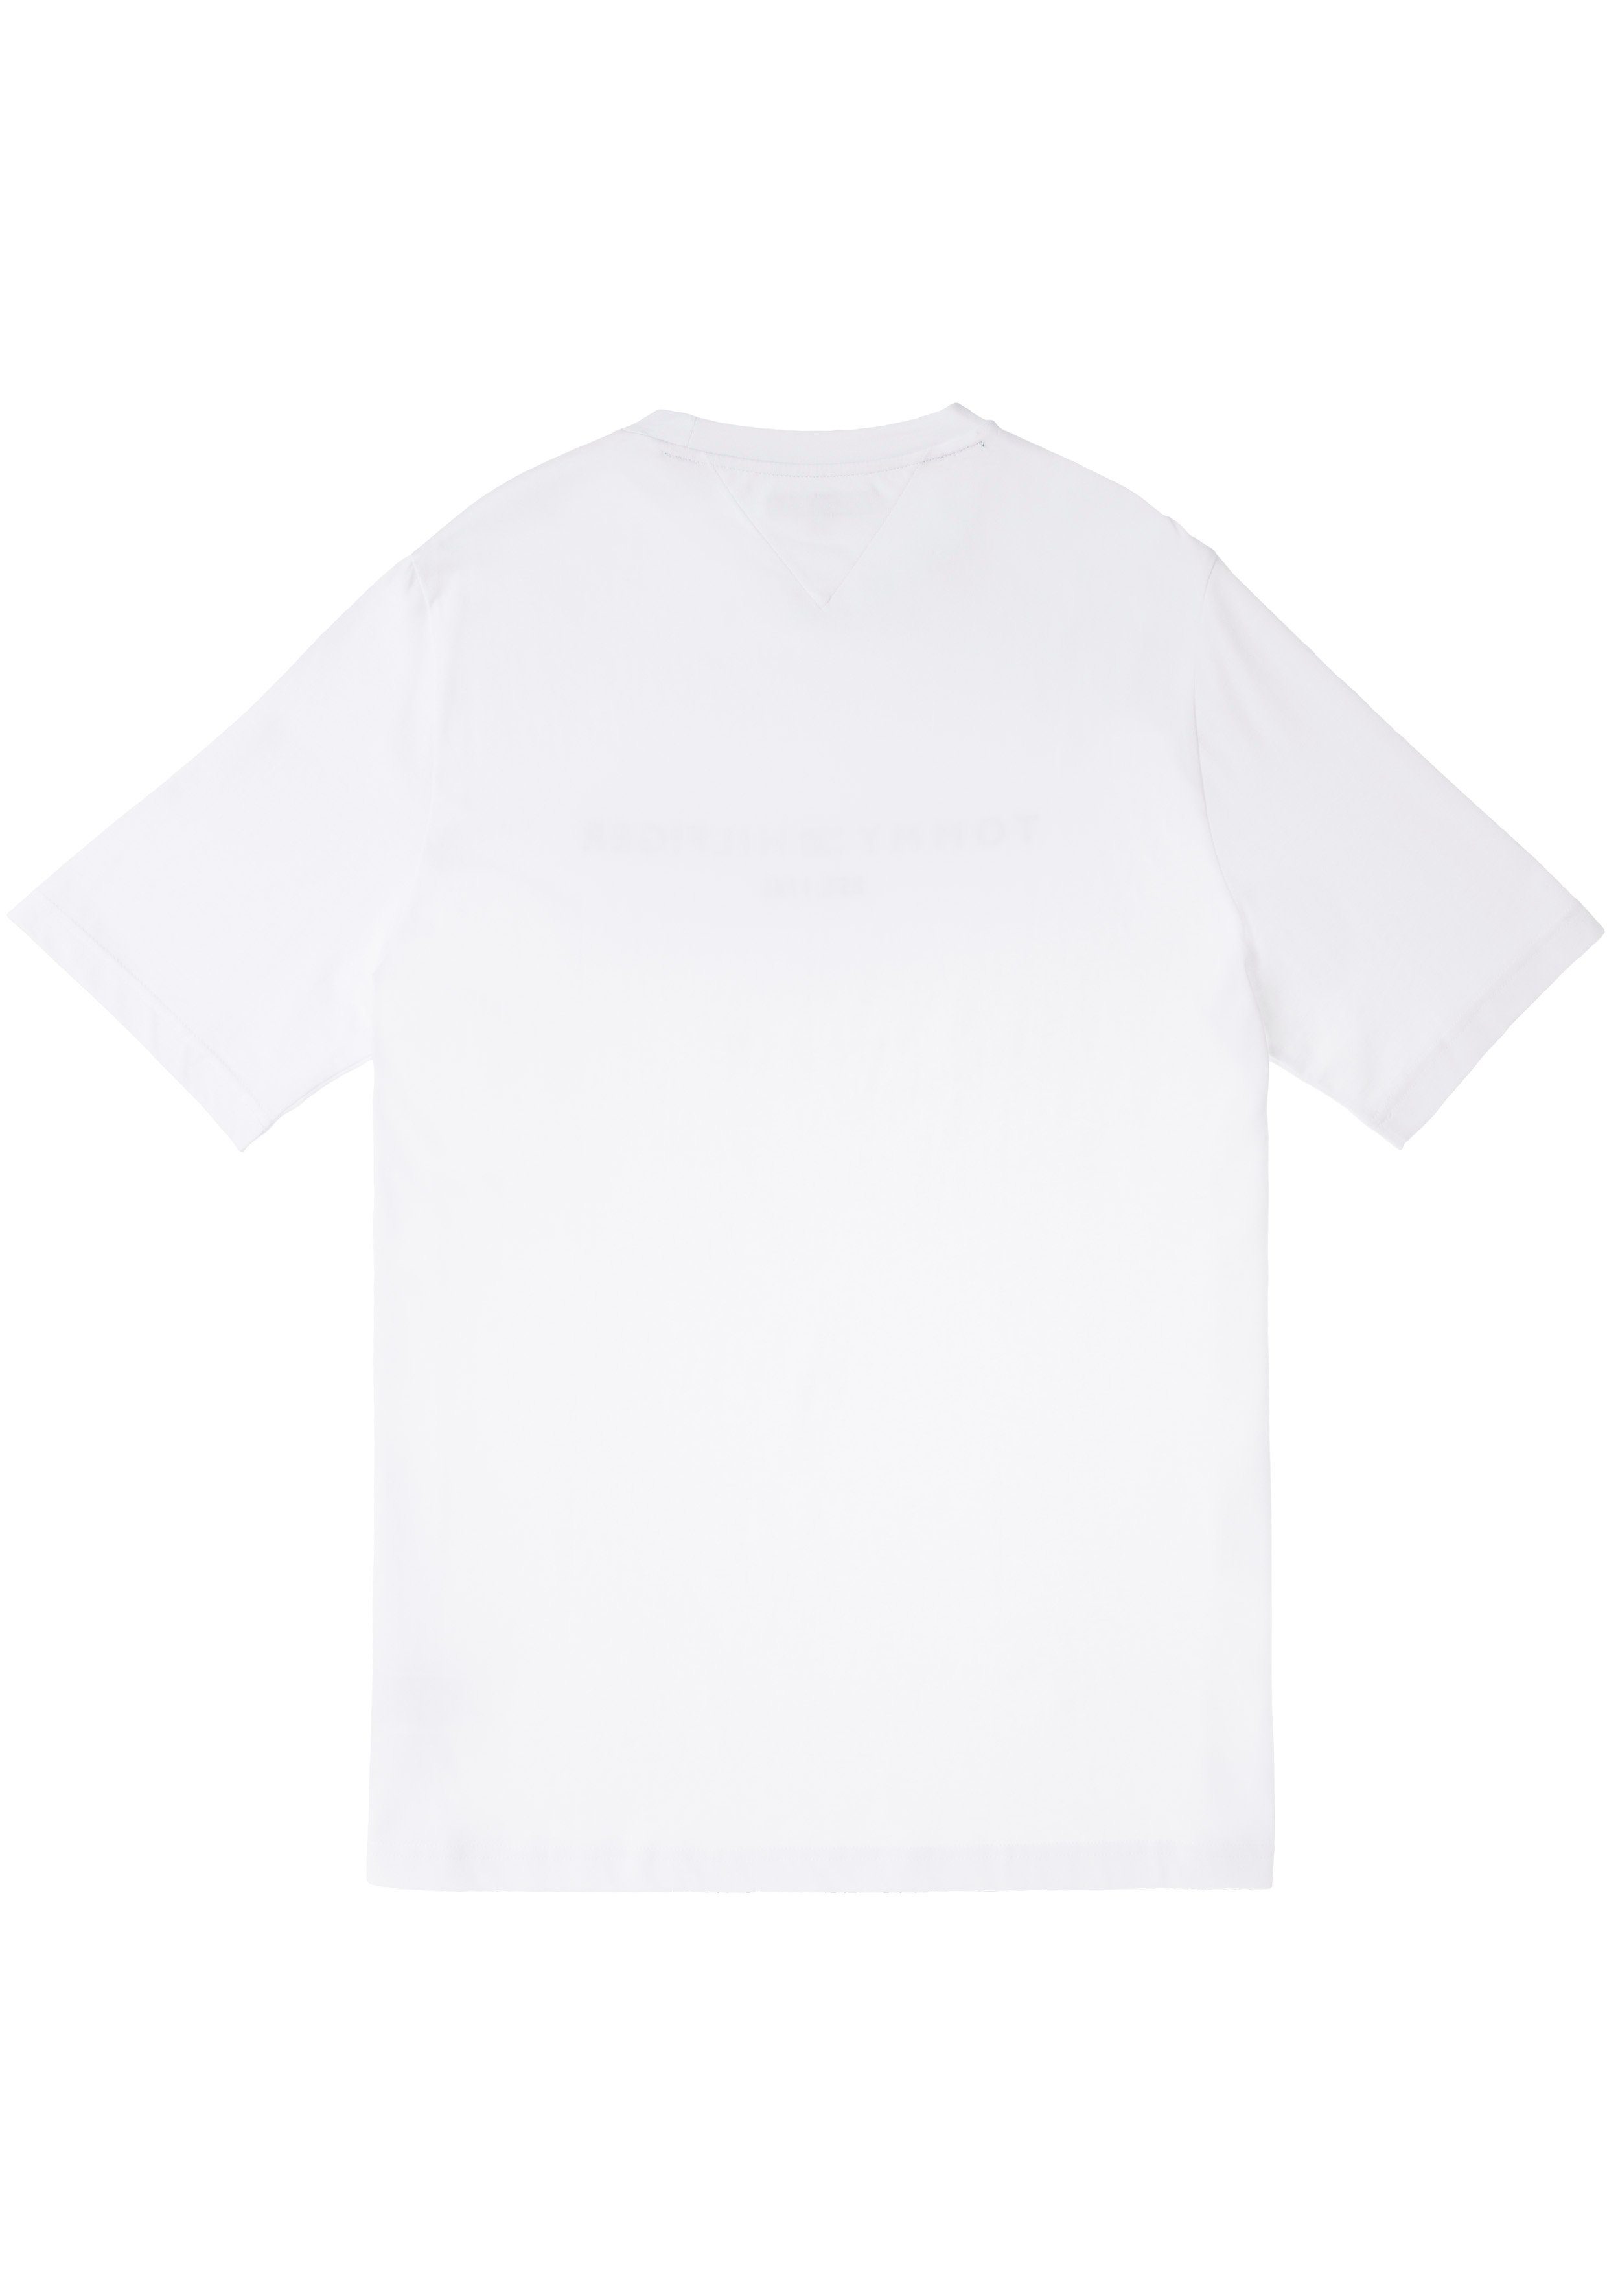 LOGO Hilfiger Tommy mit Big Tommy Hilfiger BT-TOMMY TEE-B weiß & auf der T-Shirt Logoschriftzug Tall Brust